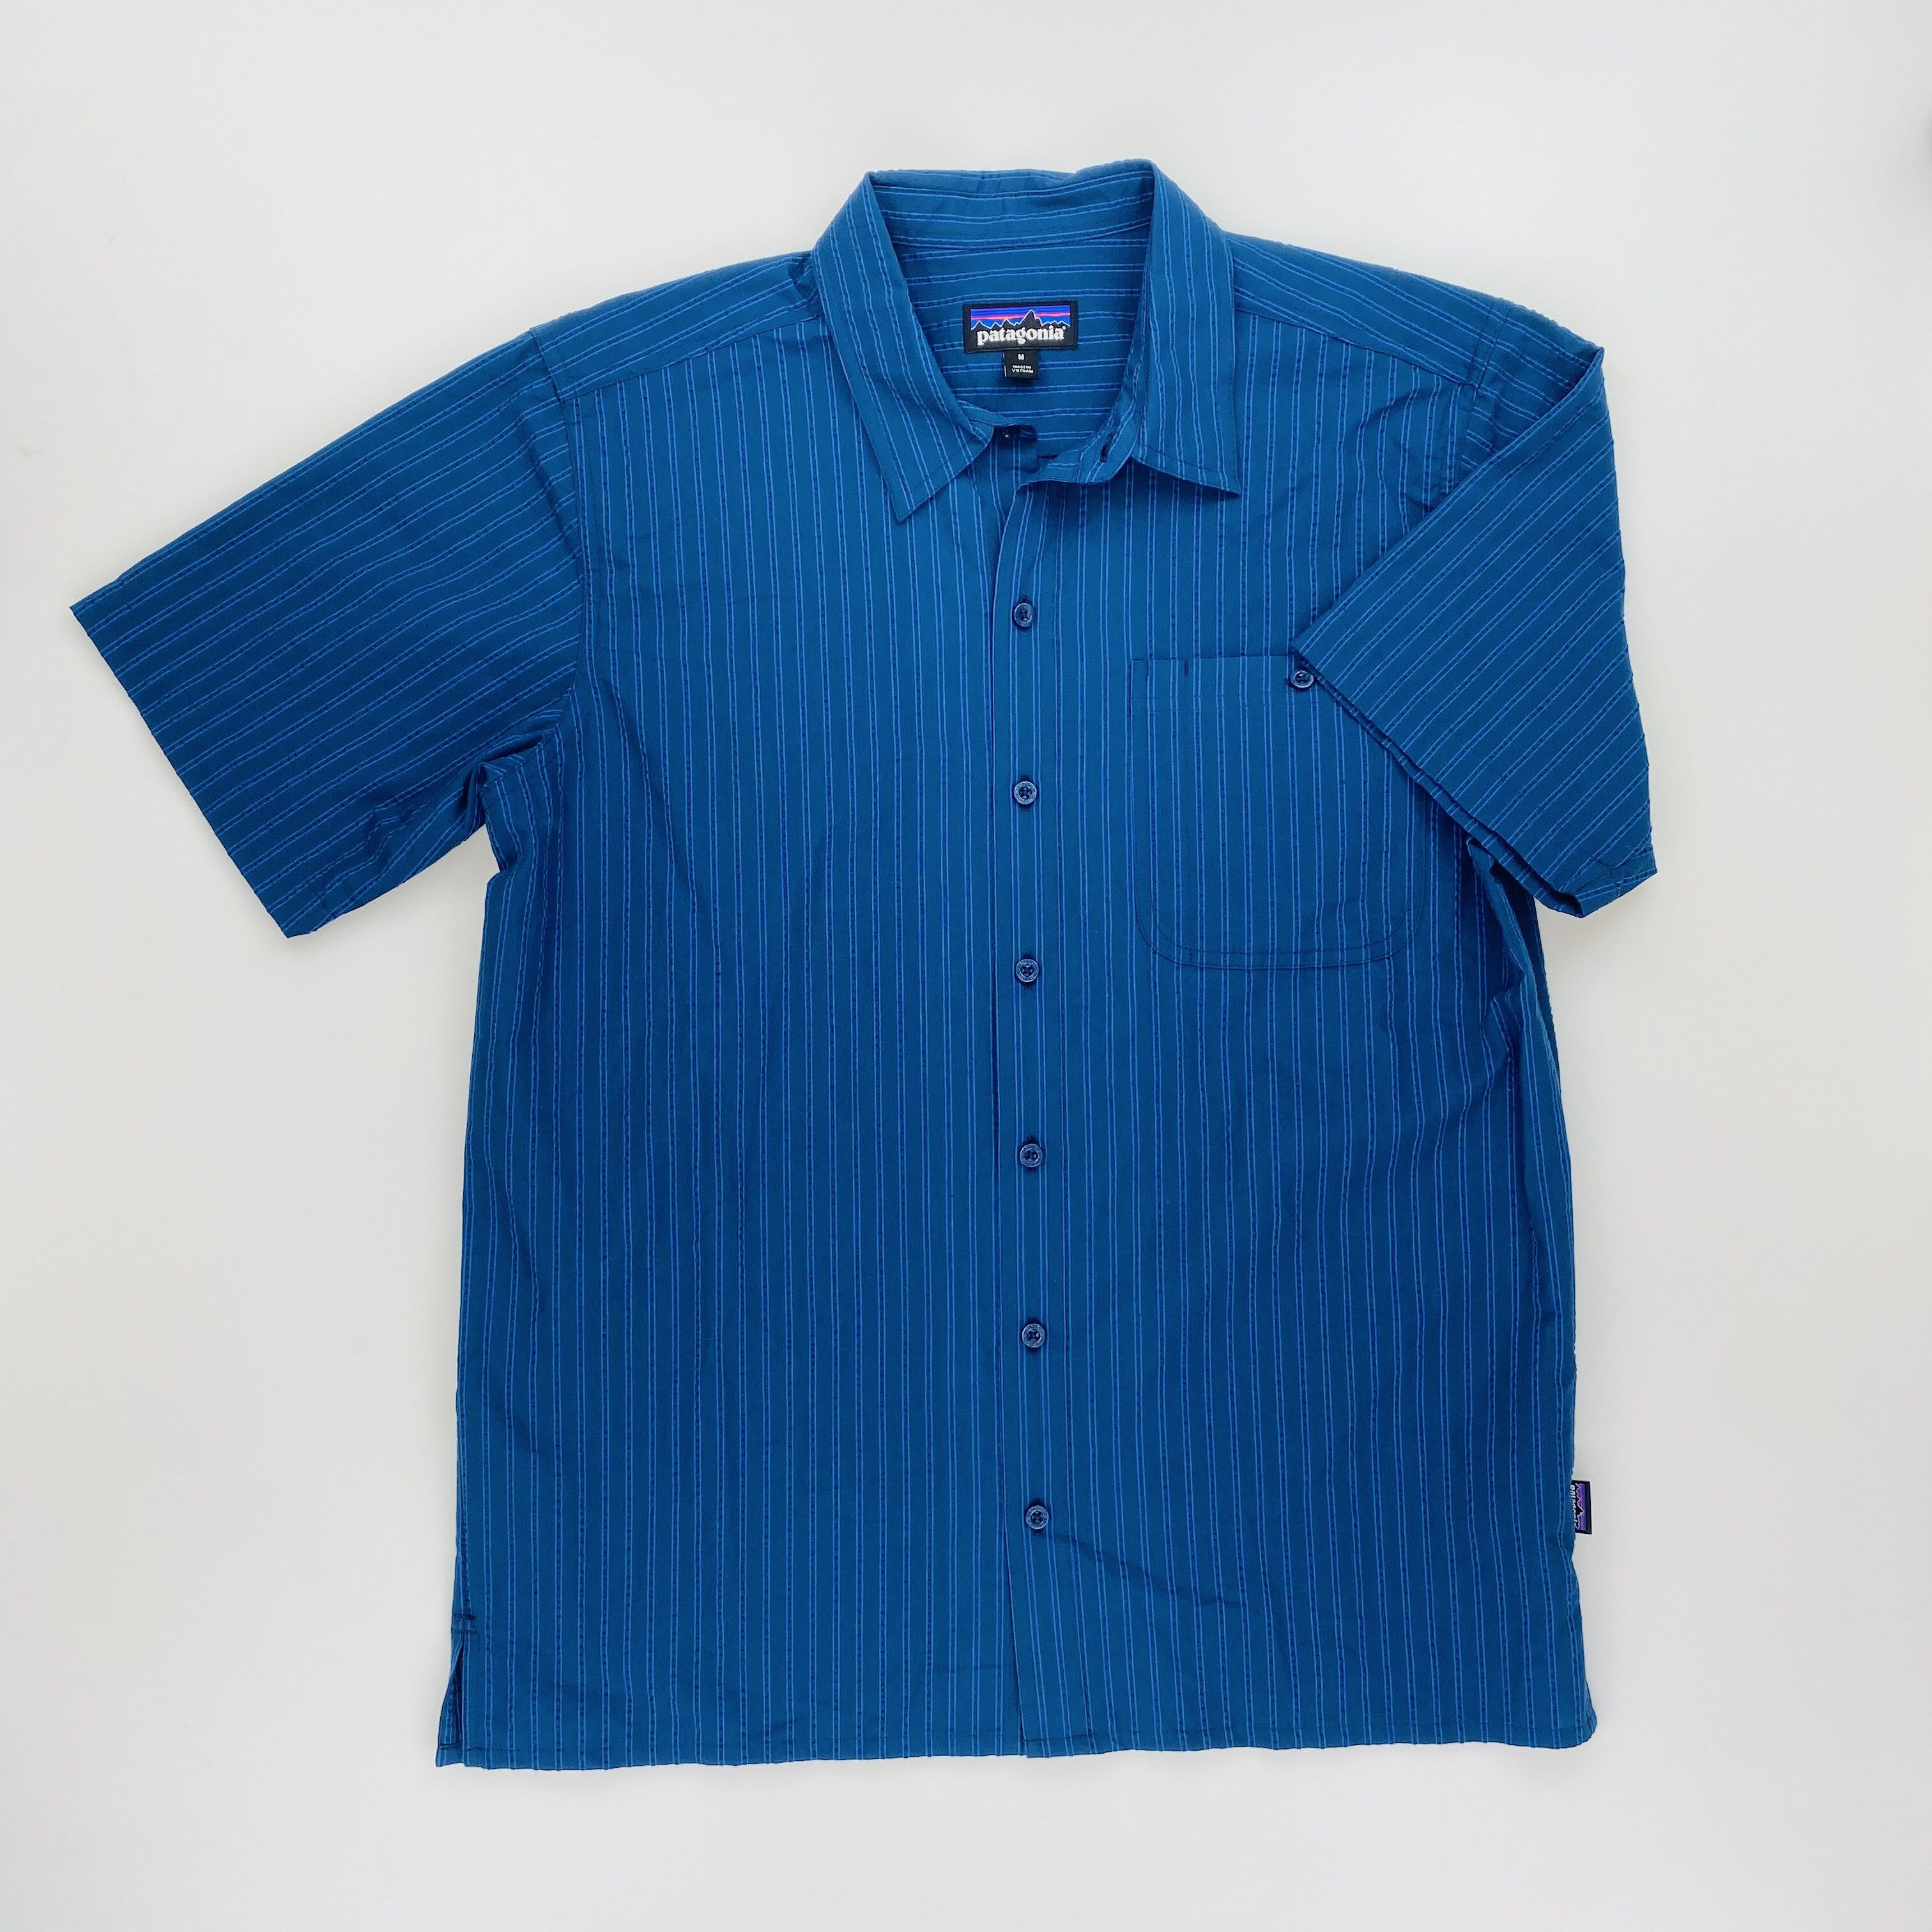 Patagonia M's Puckerware Shirt - Second Hand Shirt - Men's - Blue - M ...